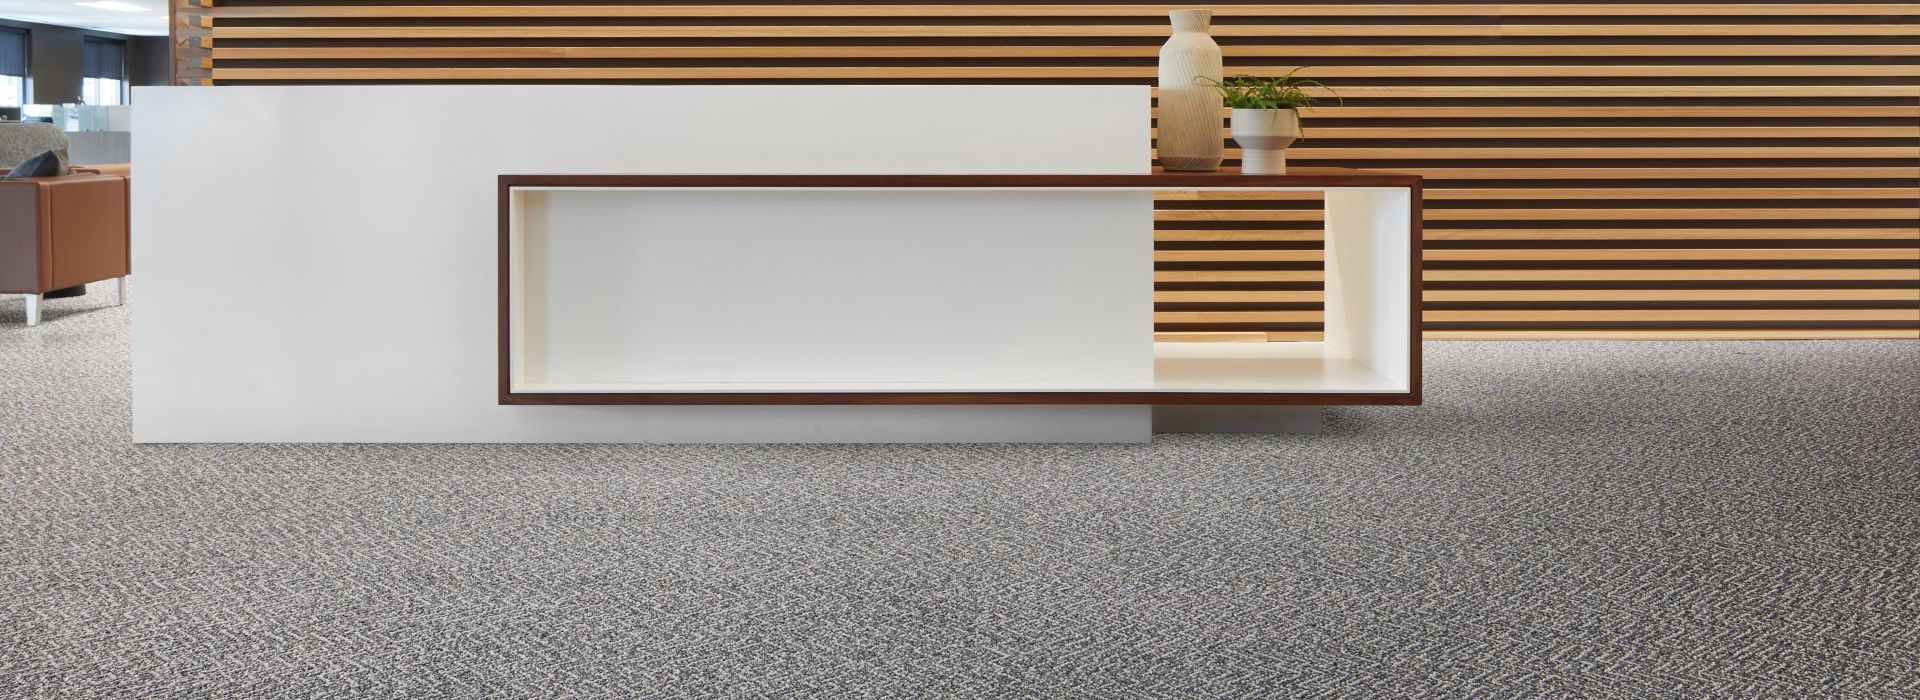 Interface Third Space 308 plank carpet tile in reception area numéro d’image 1